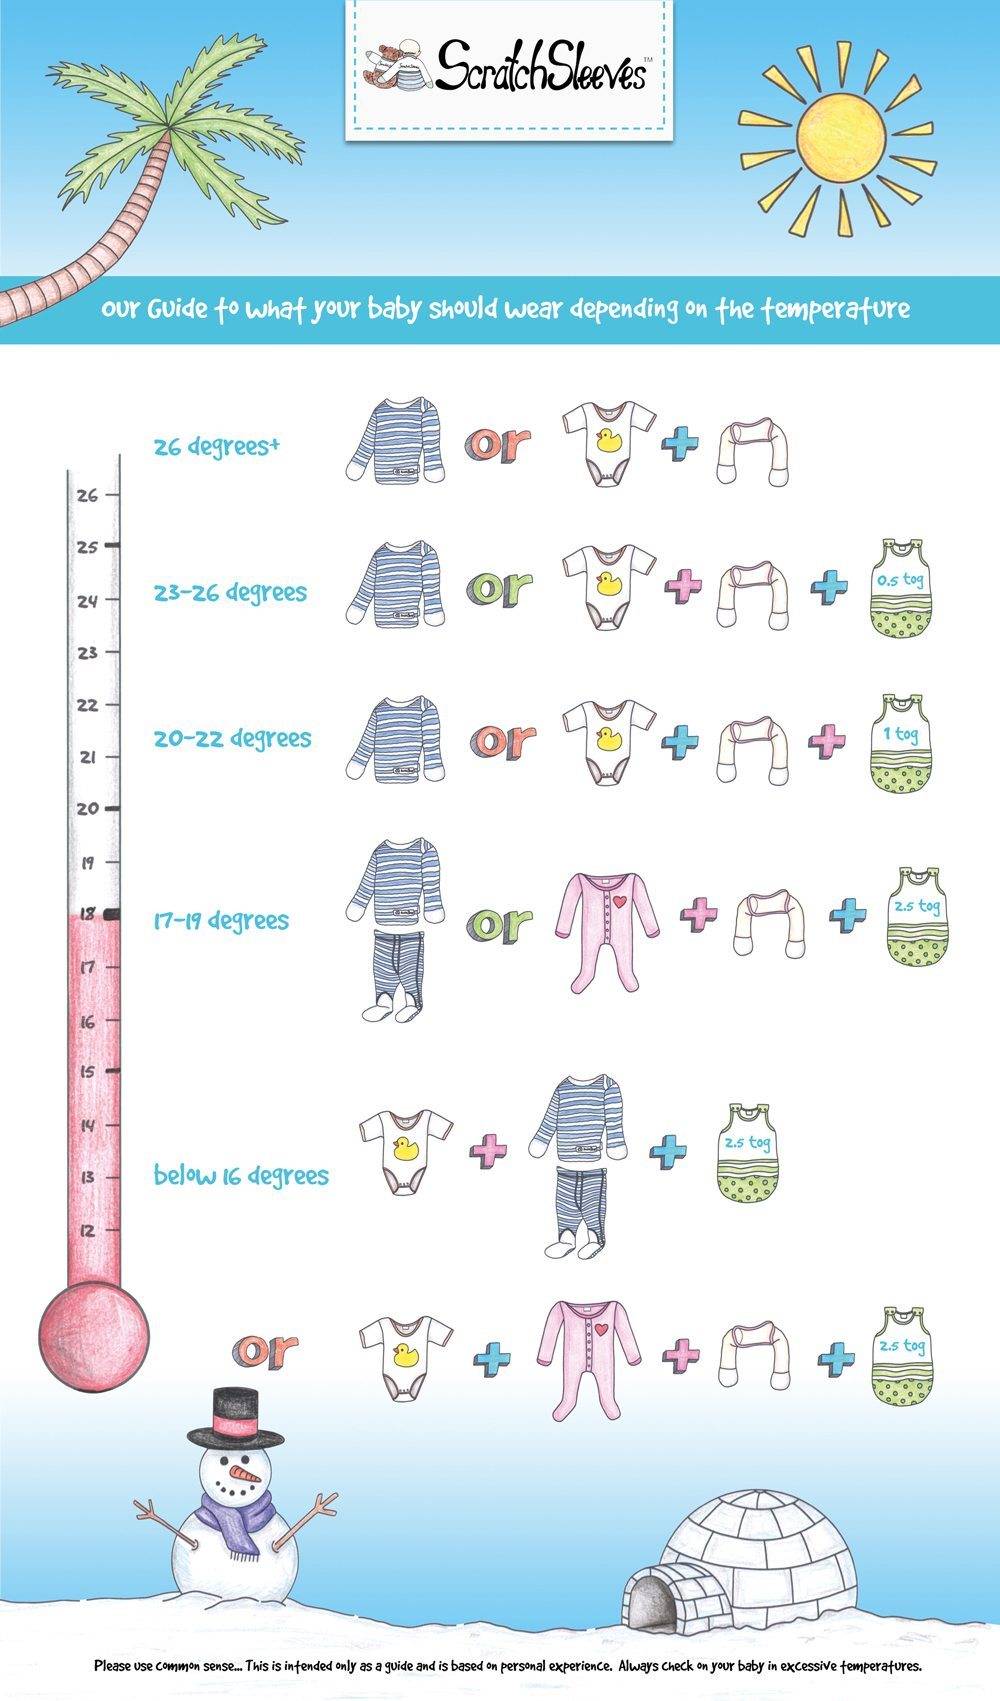 Как одевать грудничка на улицу летом, список одежды для младенца